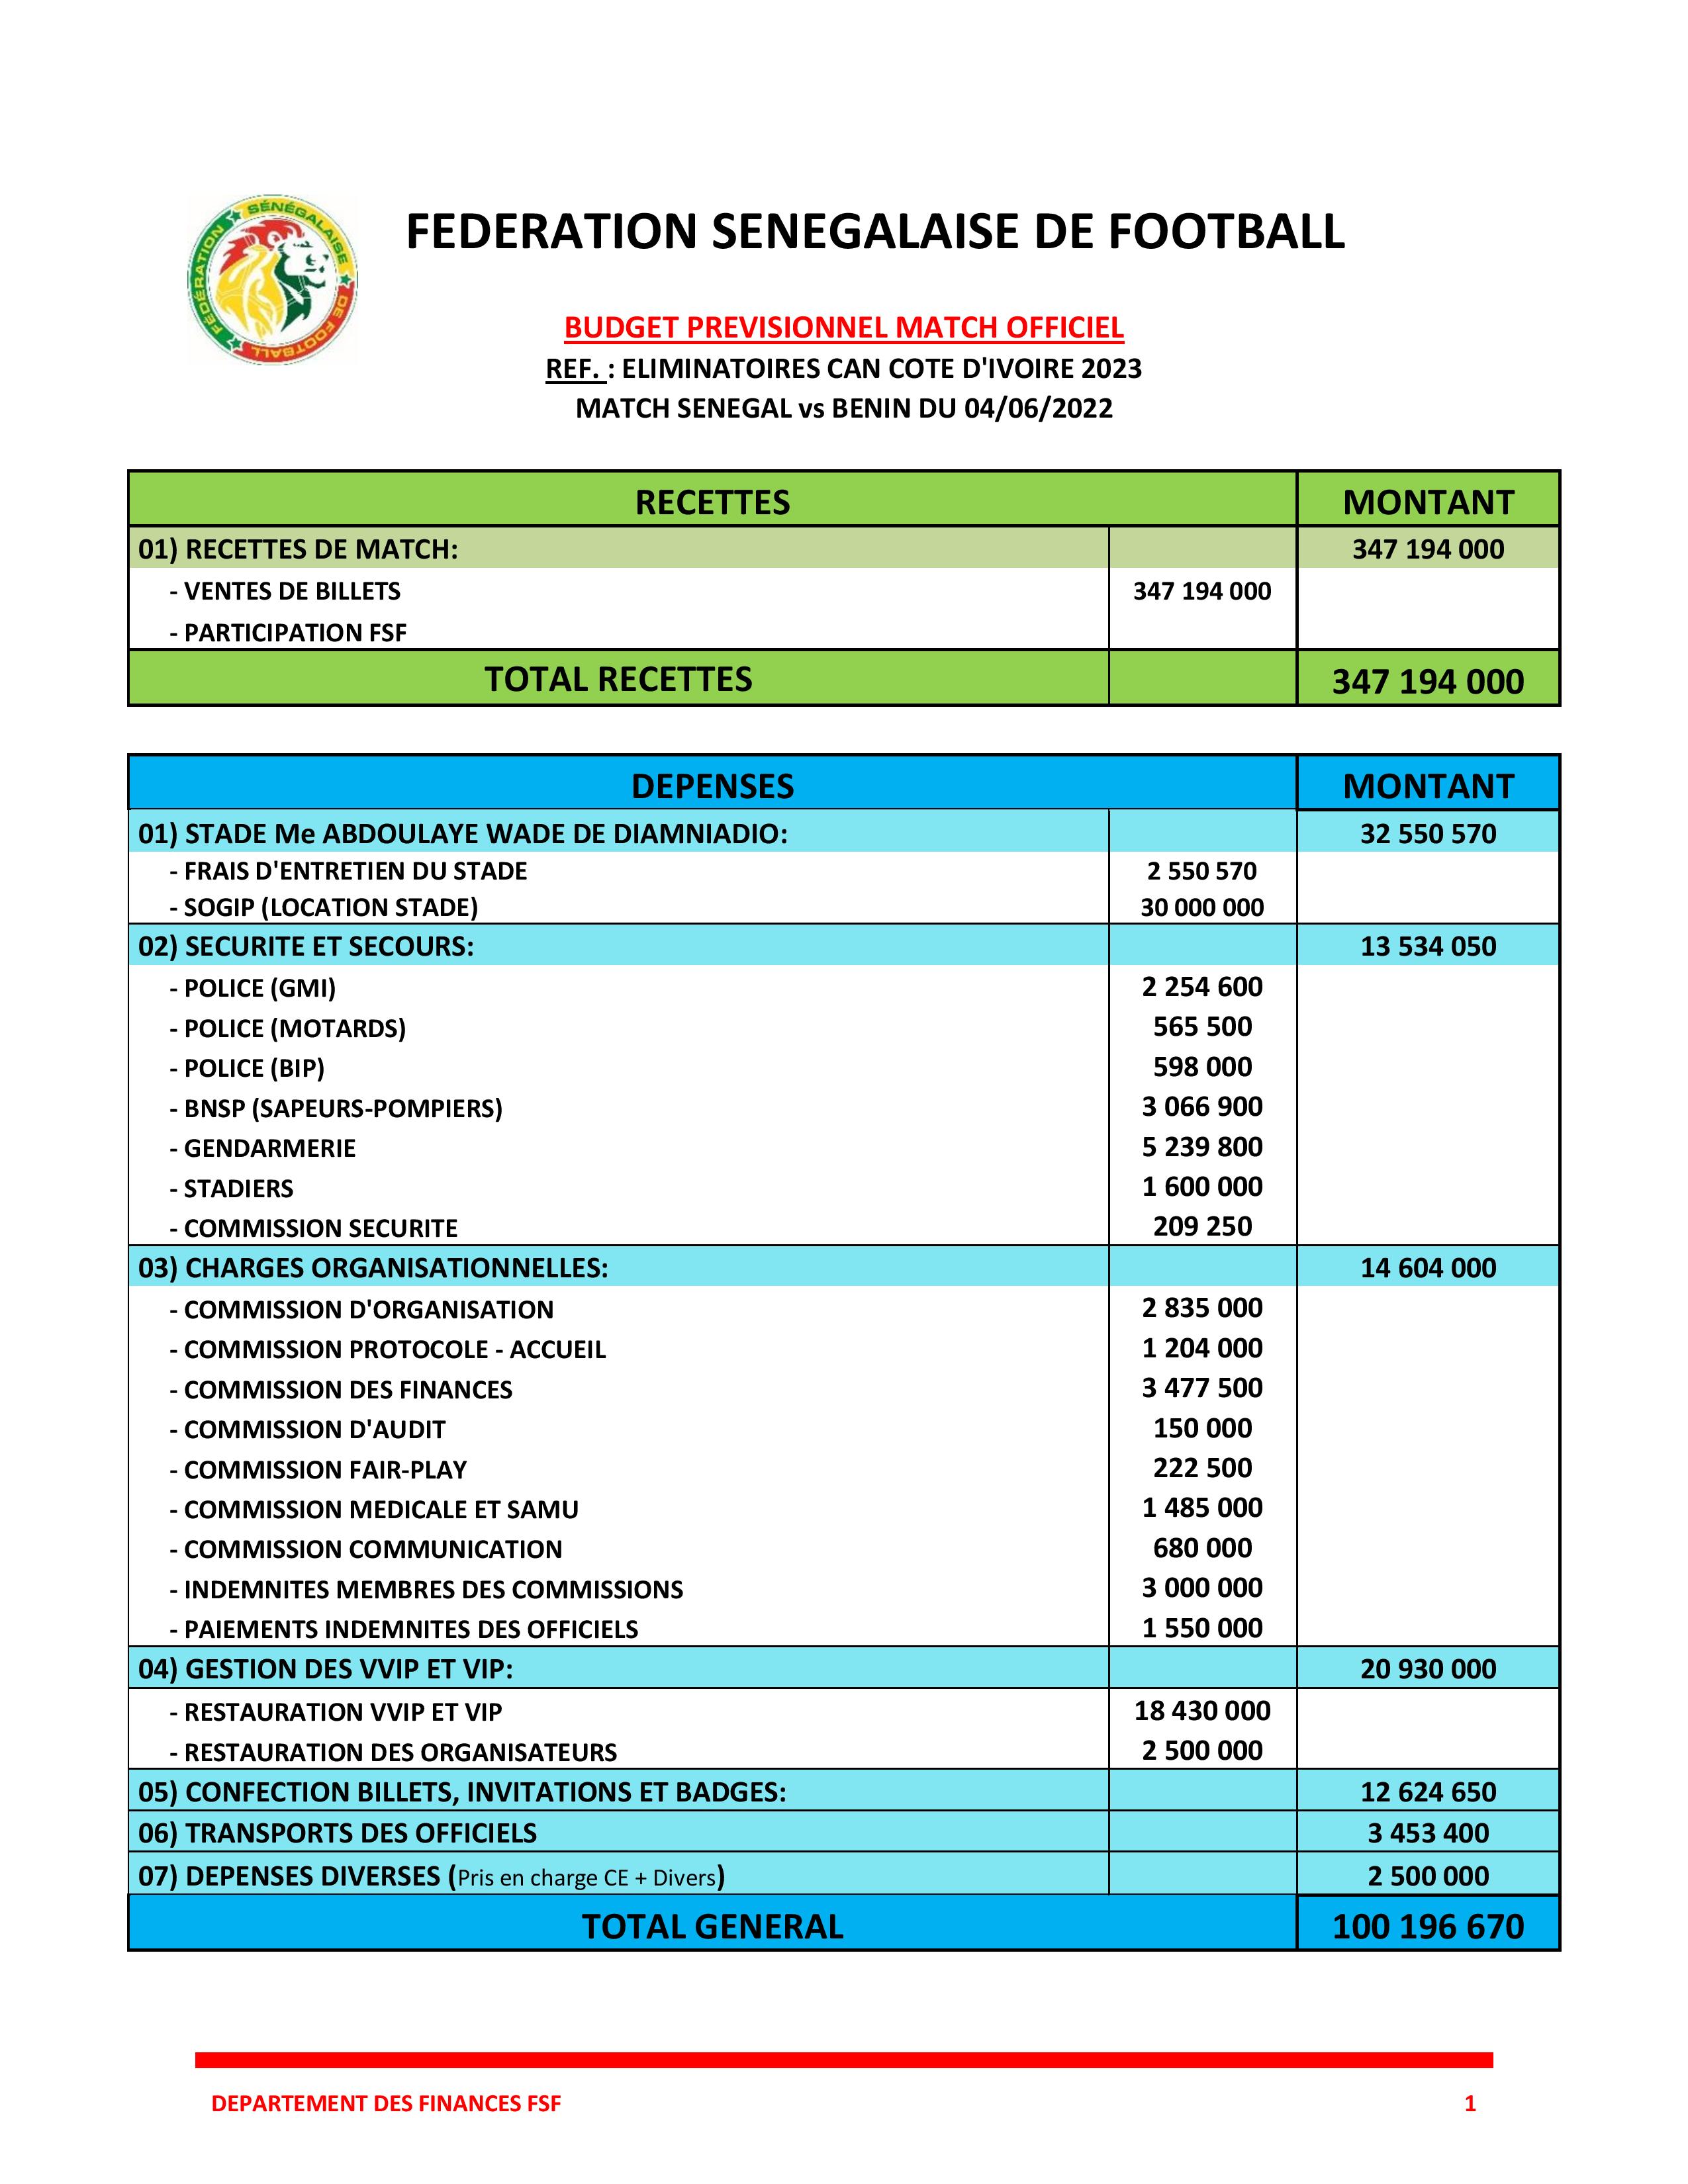 Fédération sénégalaise de football: De 600 millions à 173.597.000 FCfa sur deux matchs, qu’est-ce qui n’a pas marché ? (Document)